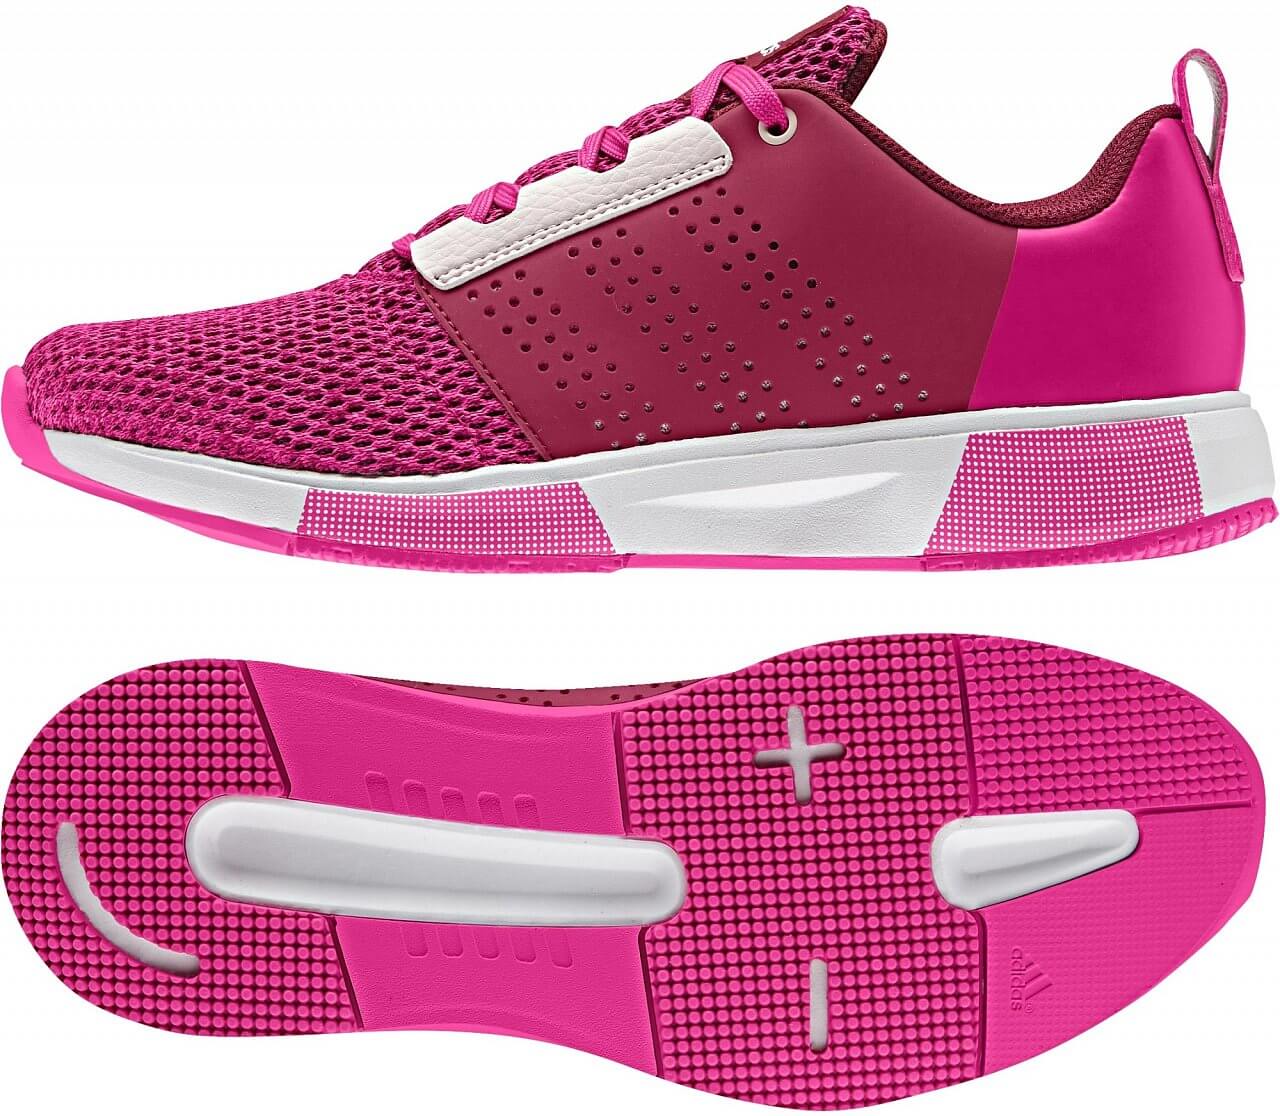 Dámské běžecké boty adidas madoru 2 w